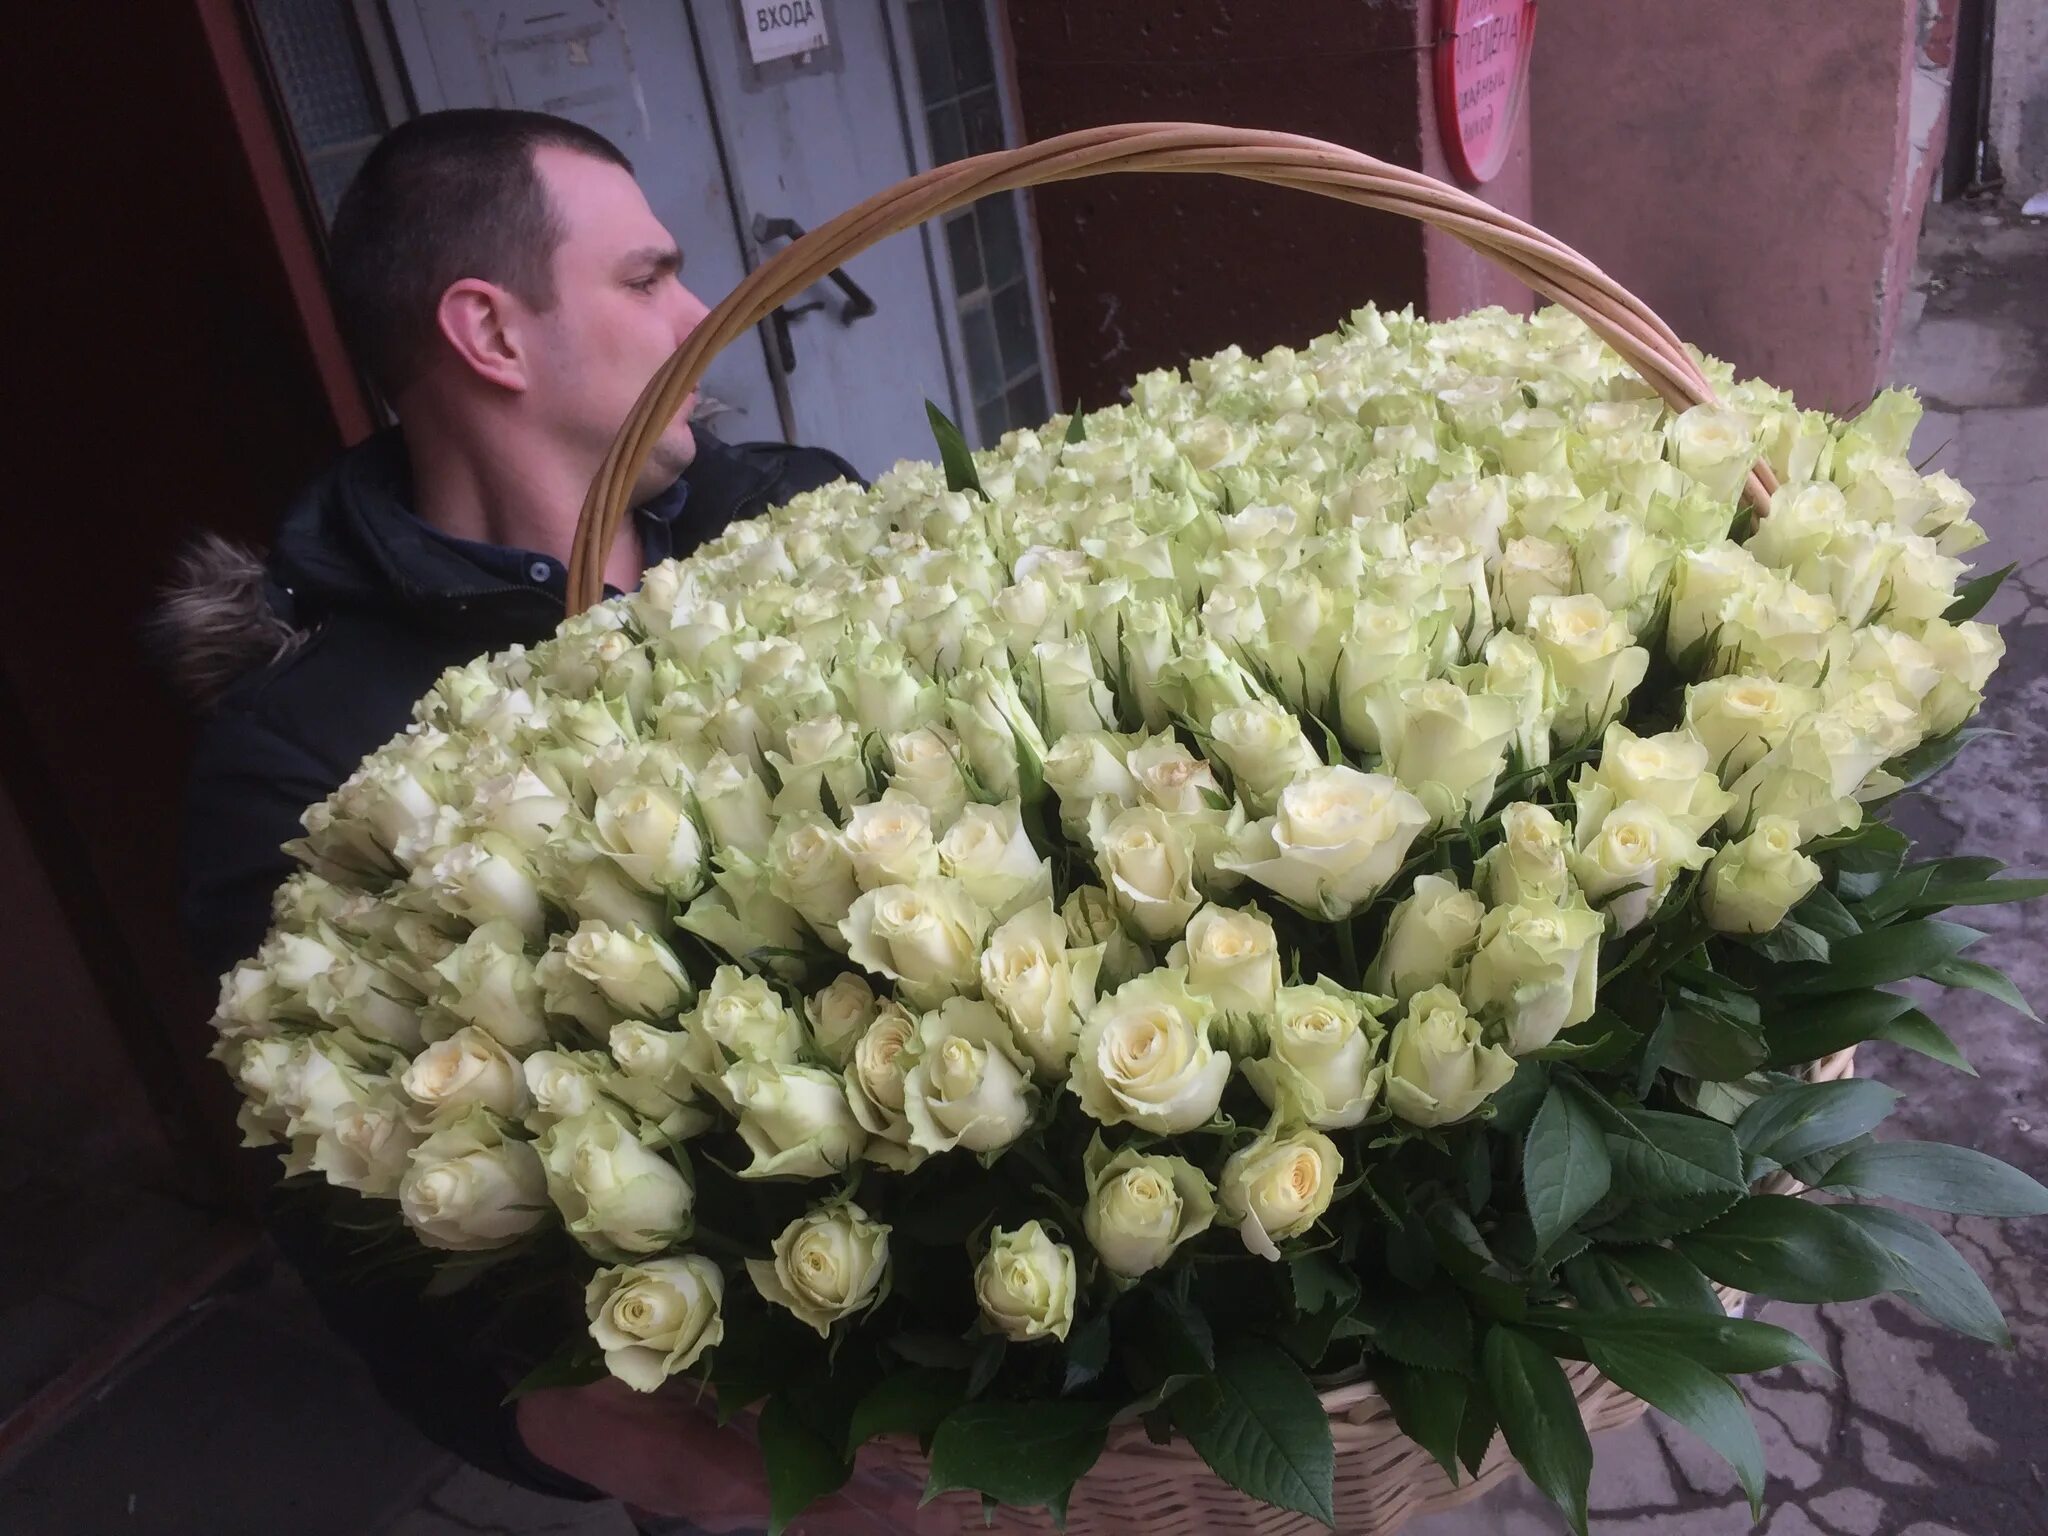 Огромный букет. Огромный букет белых роз. Шикарный букет белых роз. Мужчина с большим букетом цветов.